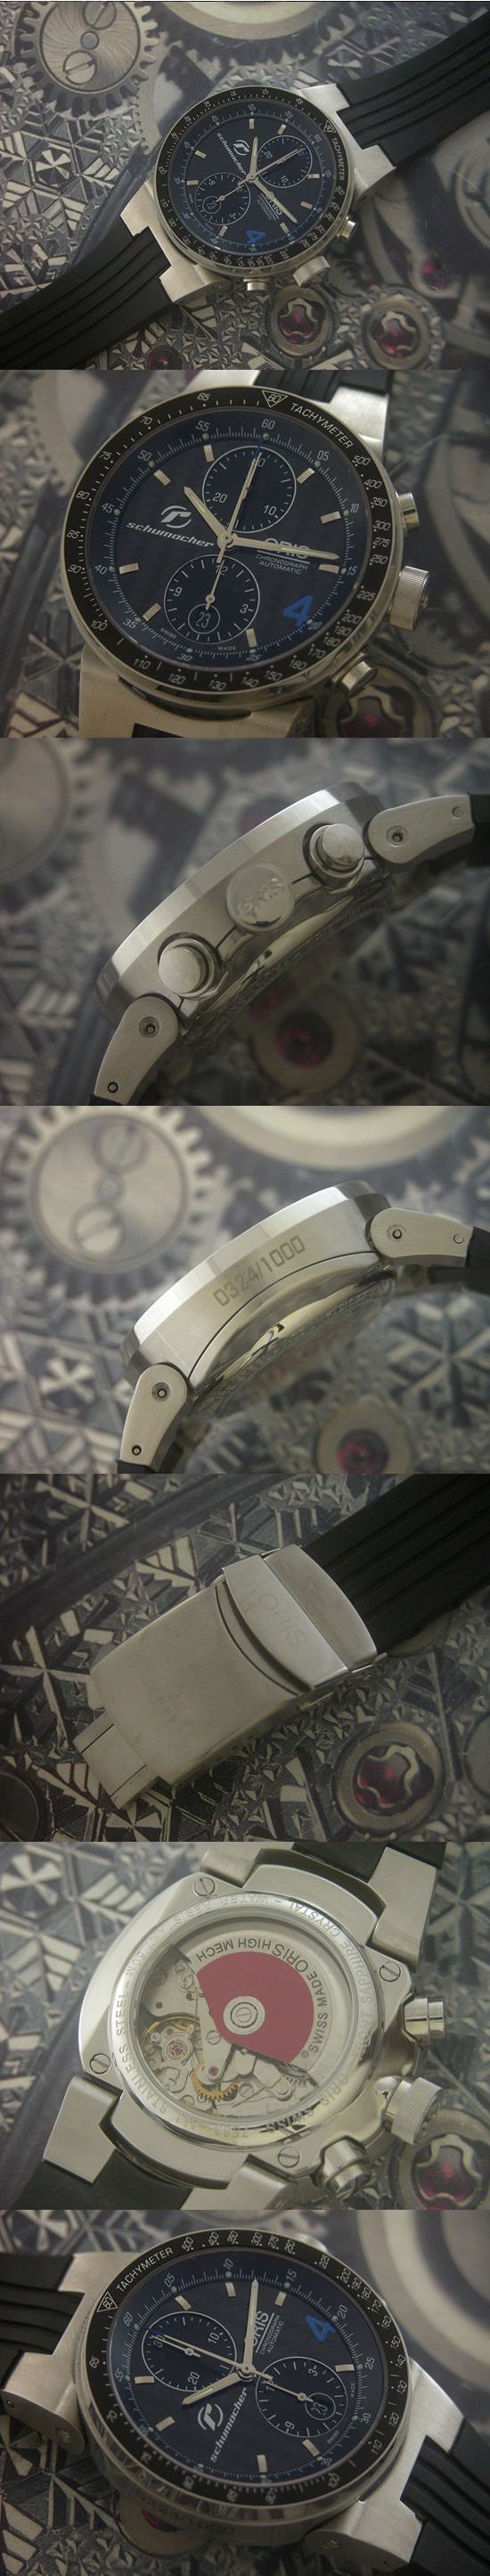 おしゃれなブランド時計がオリス-ウィリアムズ-ORIS-673.7561.70.64-af-男性用を提供します.